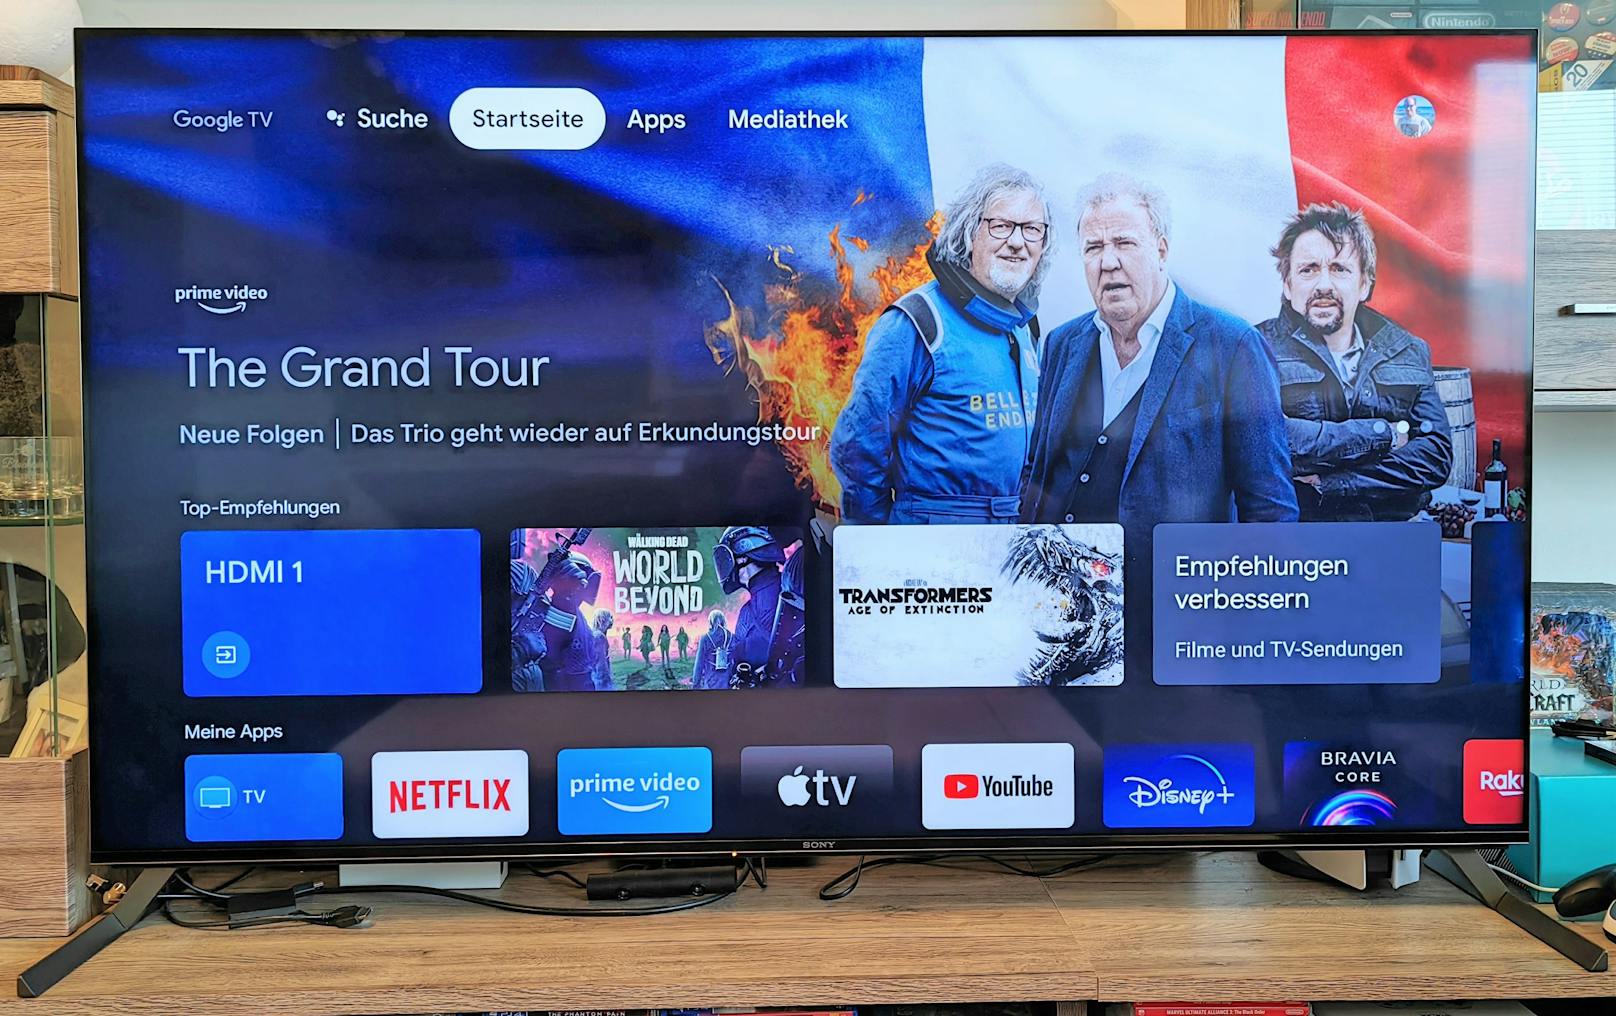 Als Betriebsystem nutzt Sony Android 10 mit Google TV, was sich schön aufgeräumt und mit smarten Vorschlägen zeigt.